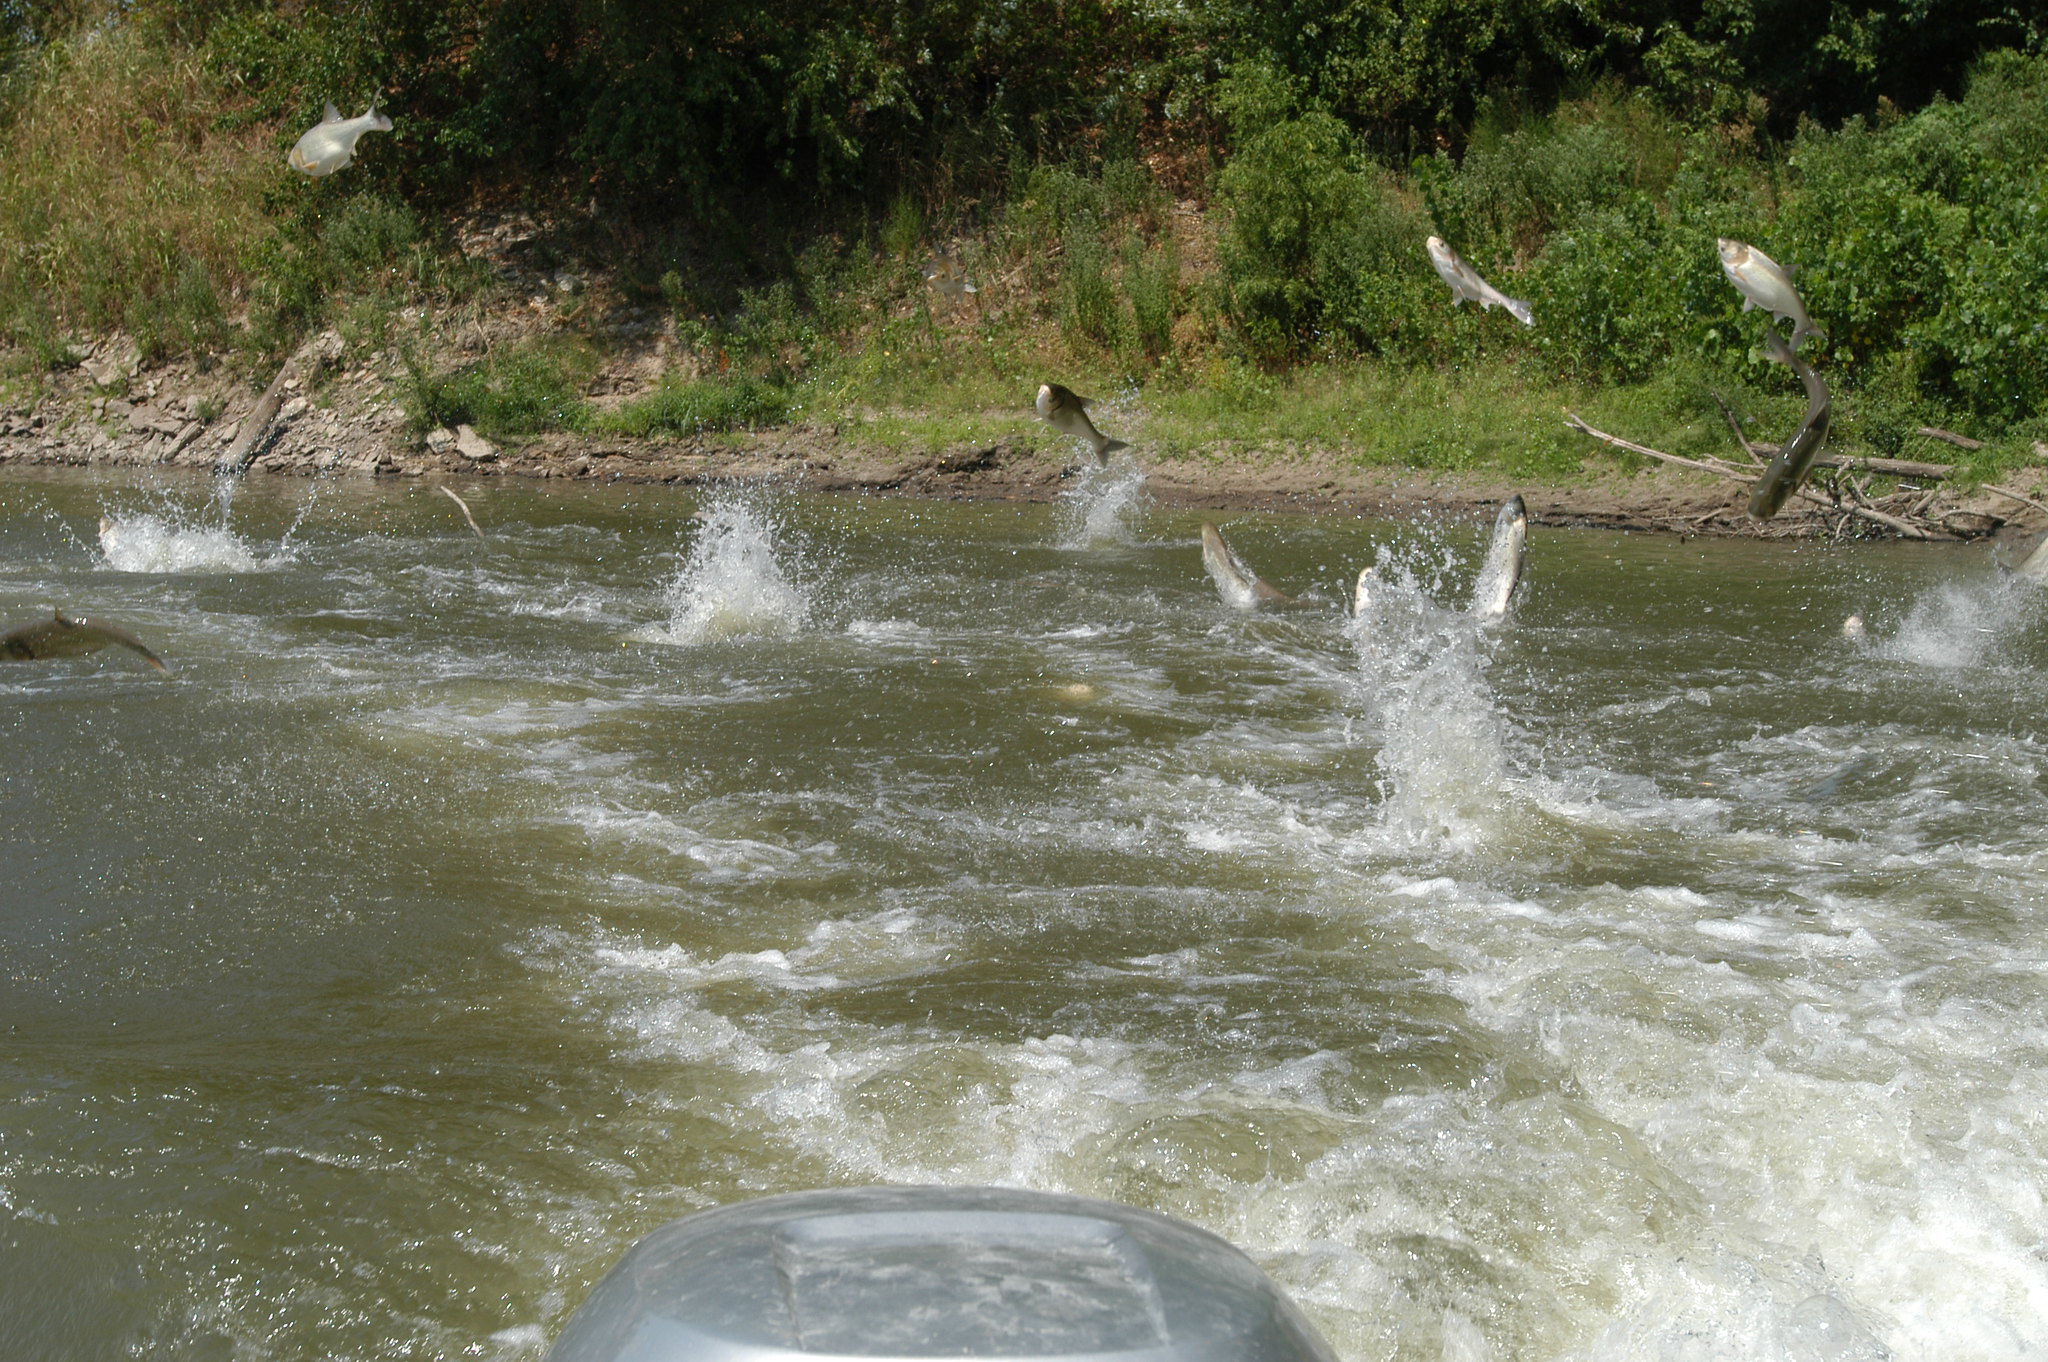 Silver carp jumping behind motor in waterway